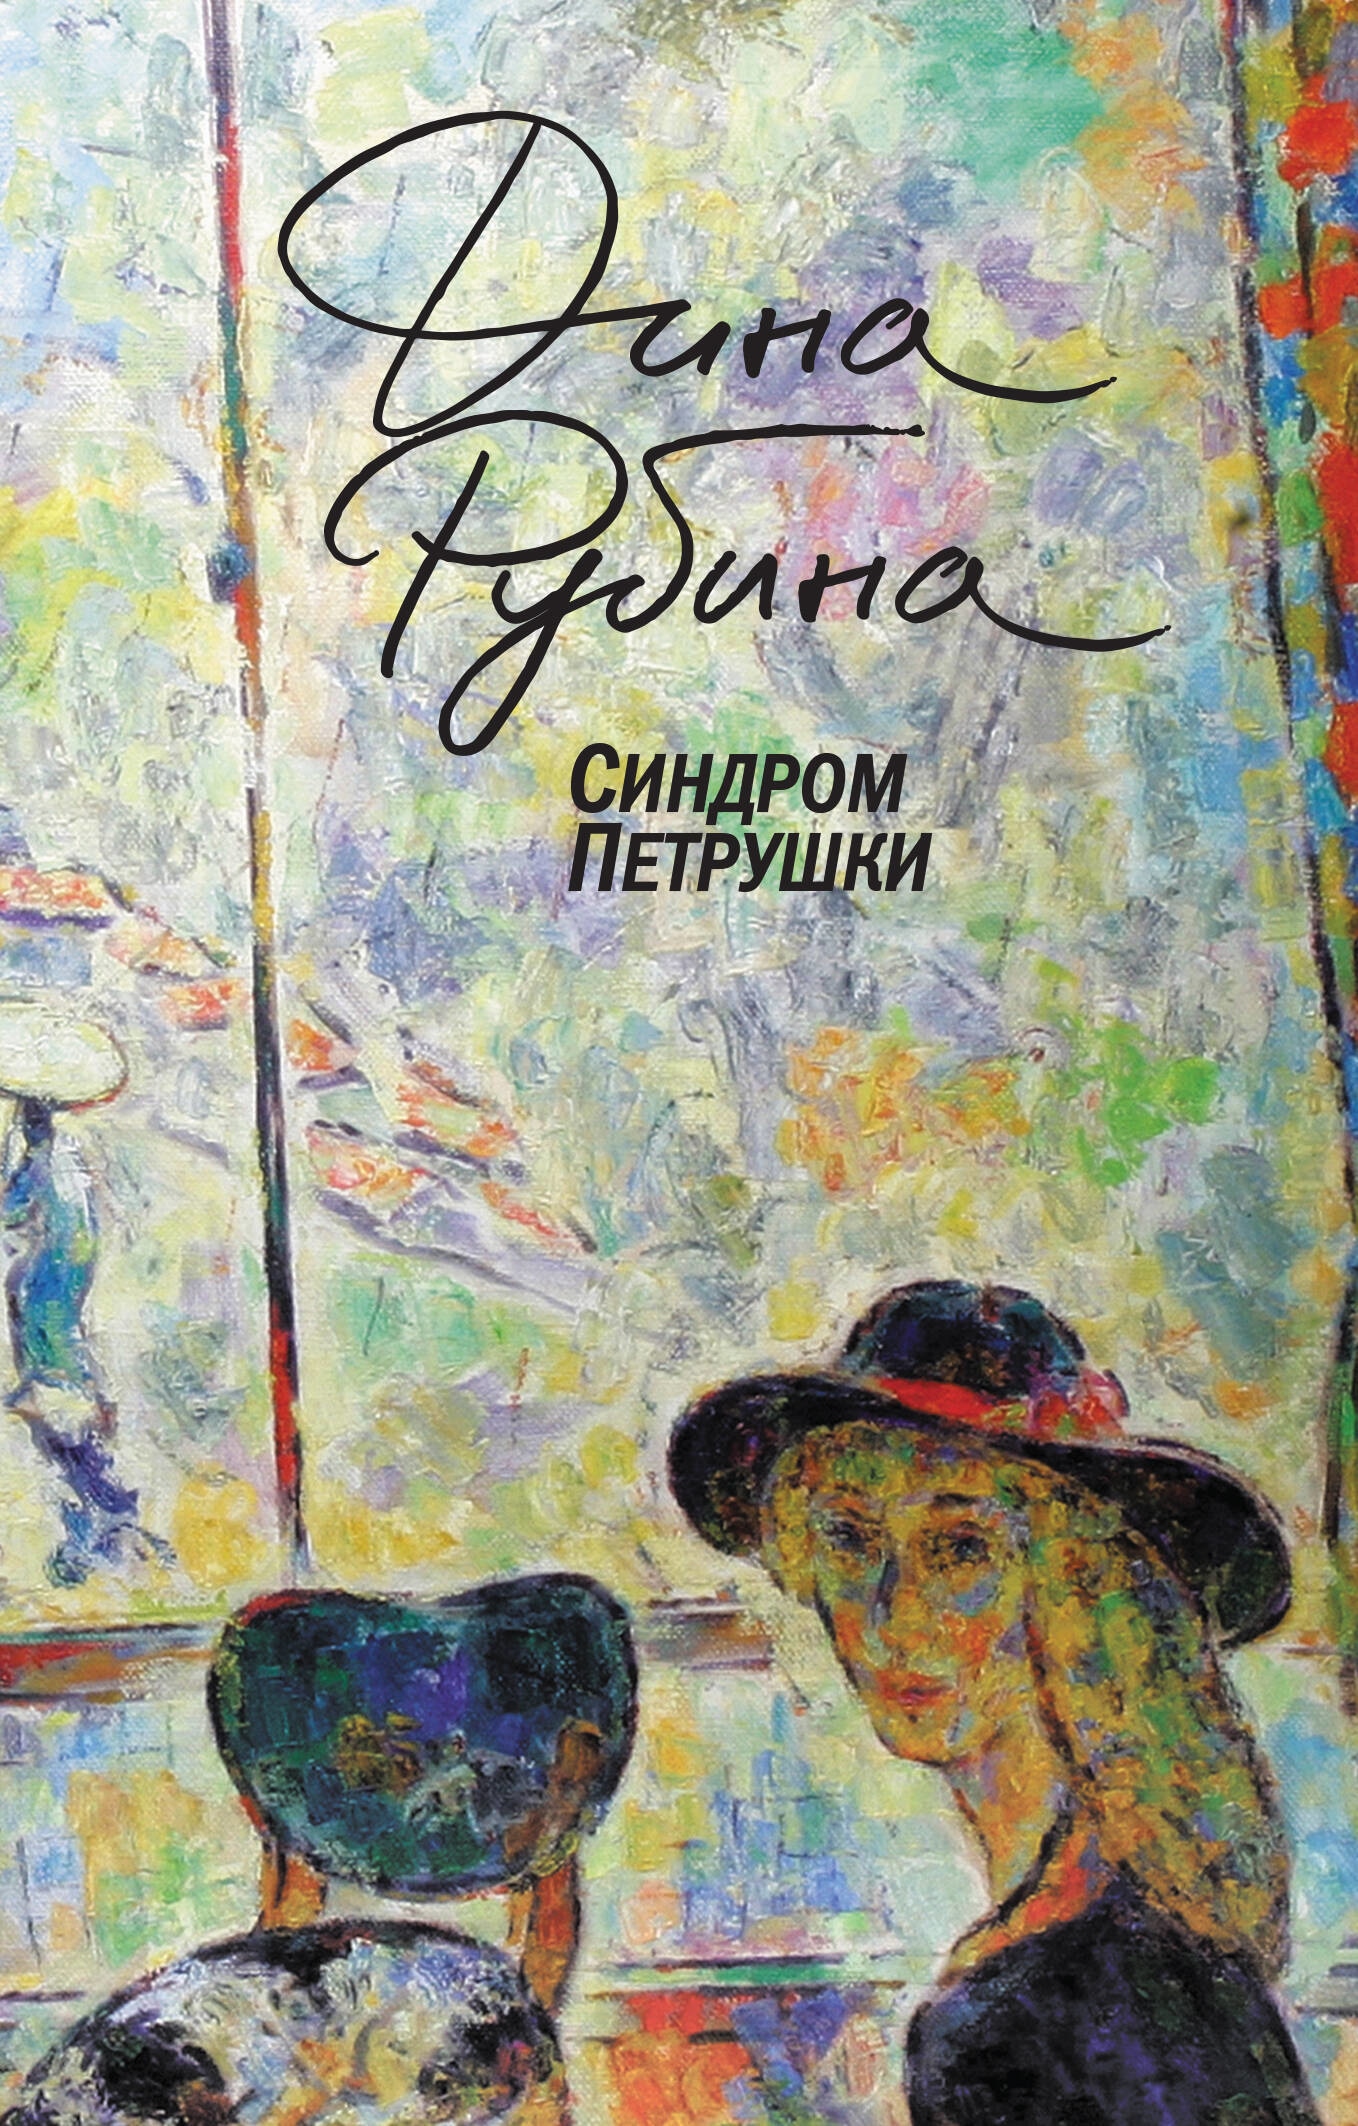 Book “Синдром Петрушки” by Дина Рубина — 2023